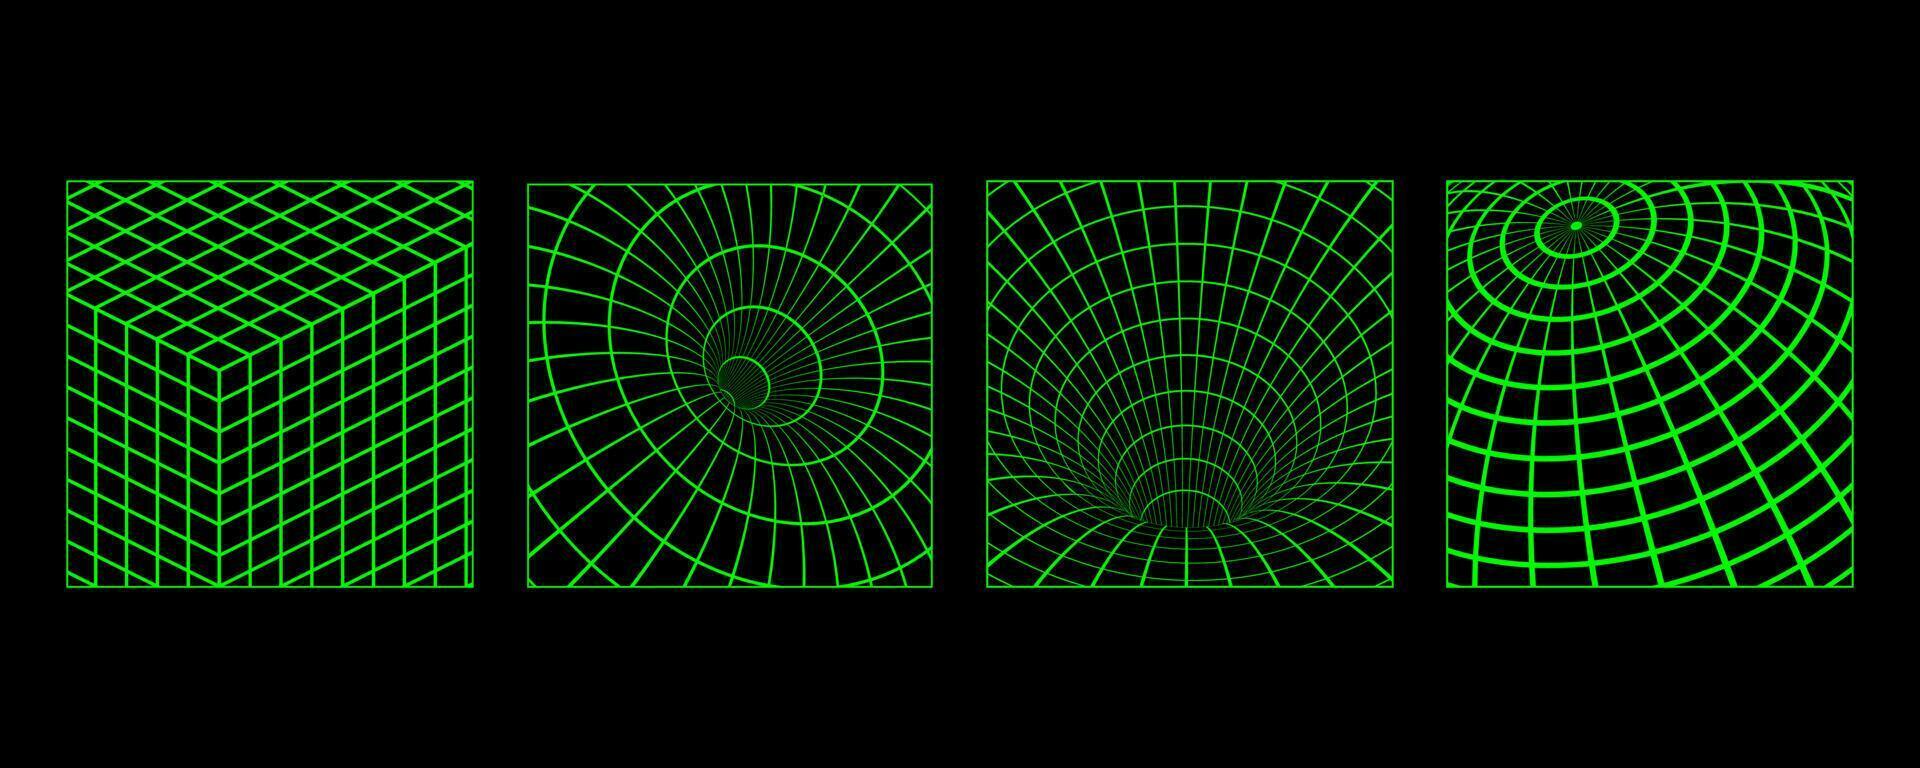 3d estrutura de arame cartazes com geométrico formas e grades dentro na moda retro cyberpunk anos 80 anos 90 estilo. ano 2000 estético vetor